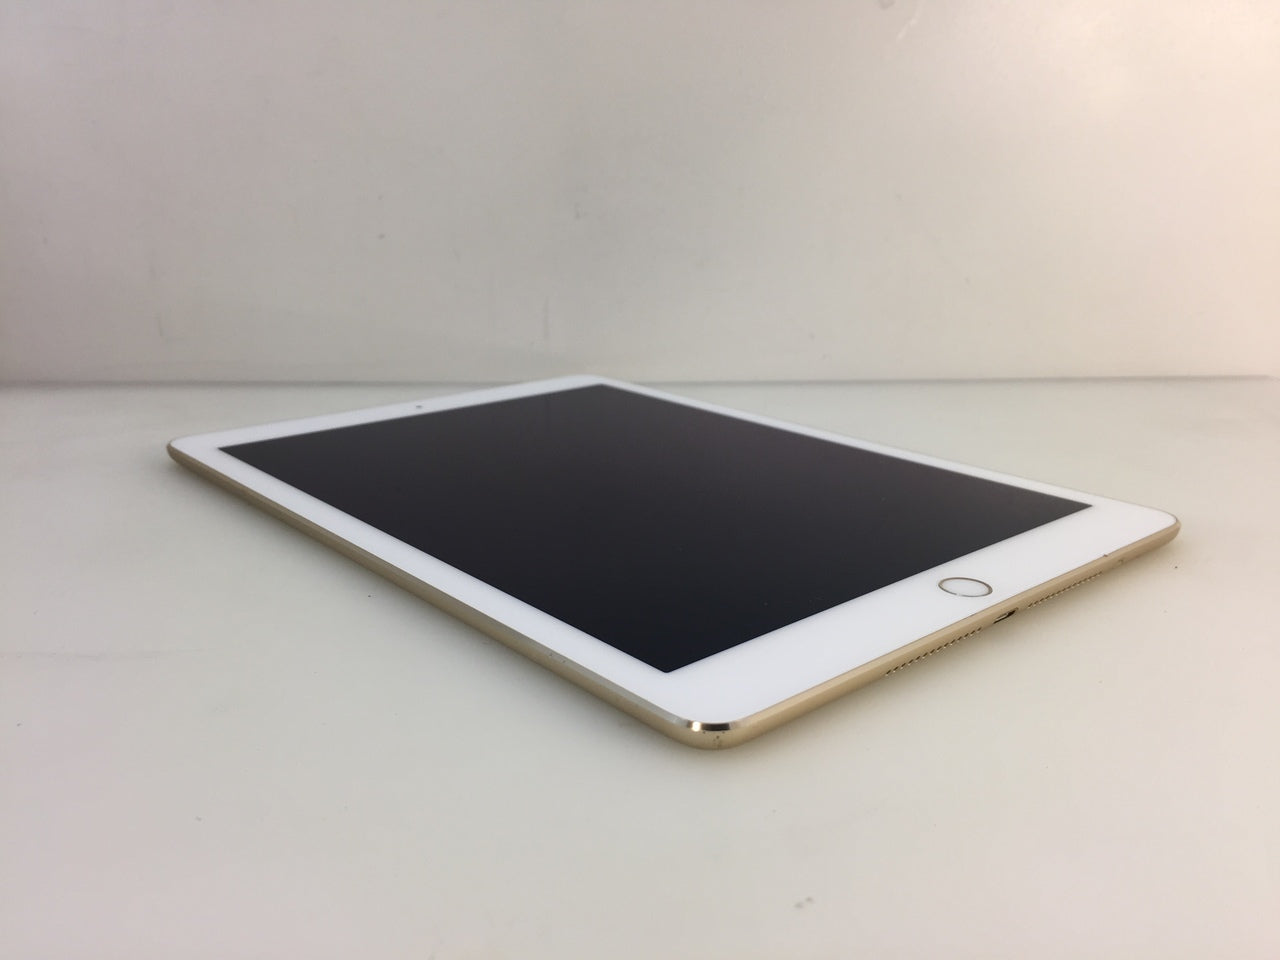 Apple iPad Air 2 16GB Wi-FI 9.7in Gold MH0W2LL/A A1566 – NT